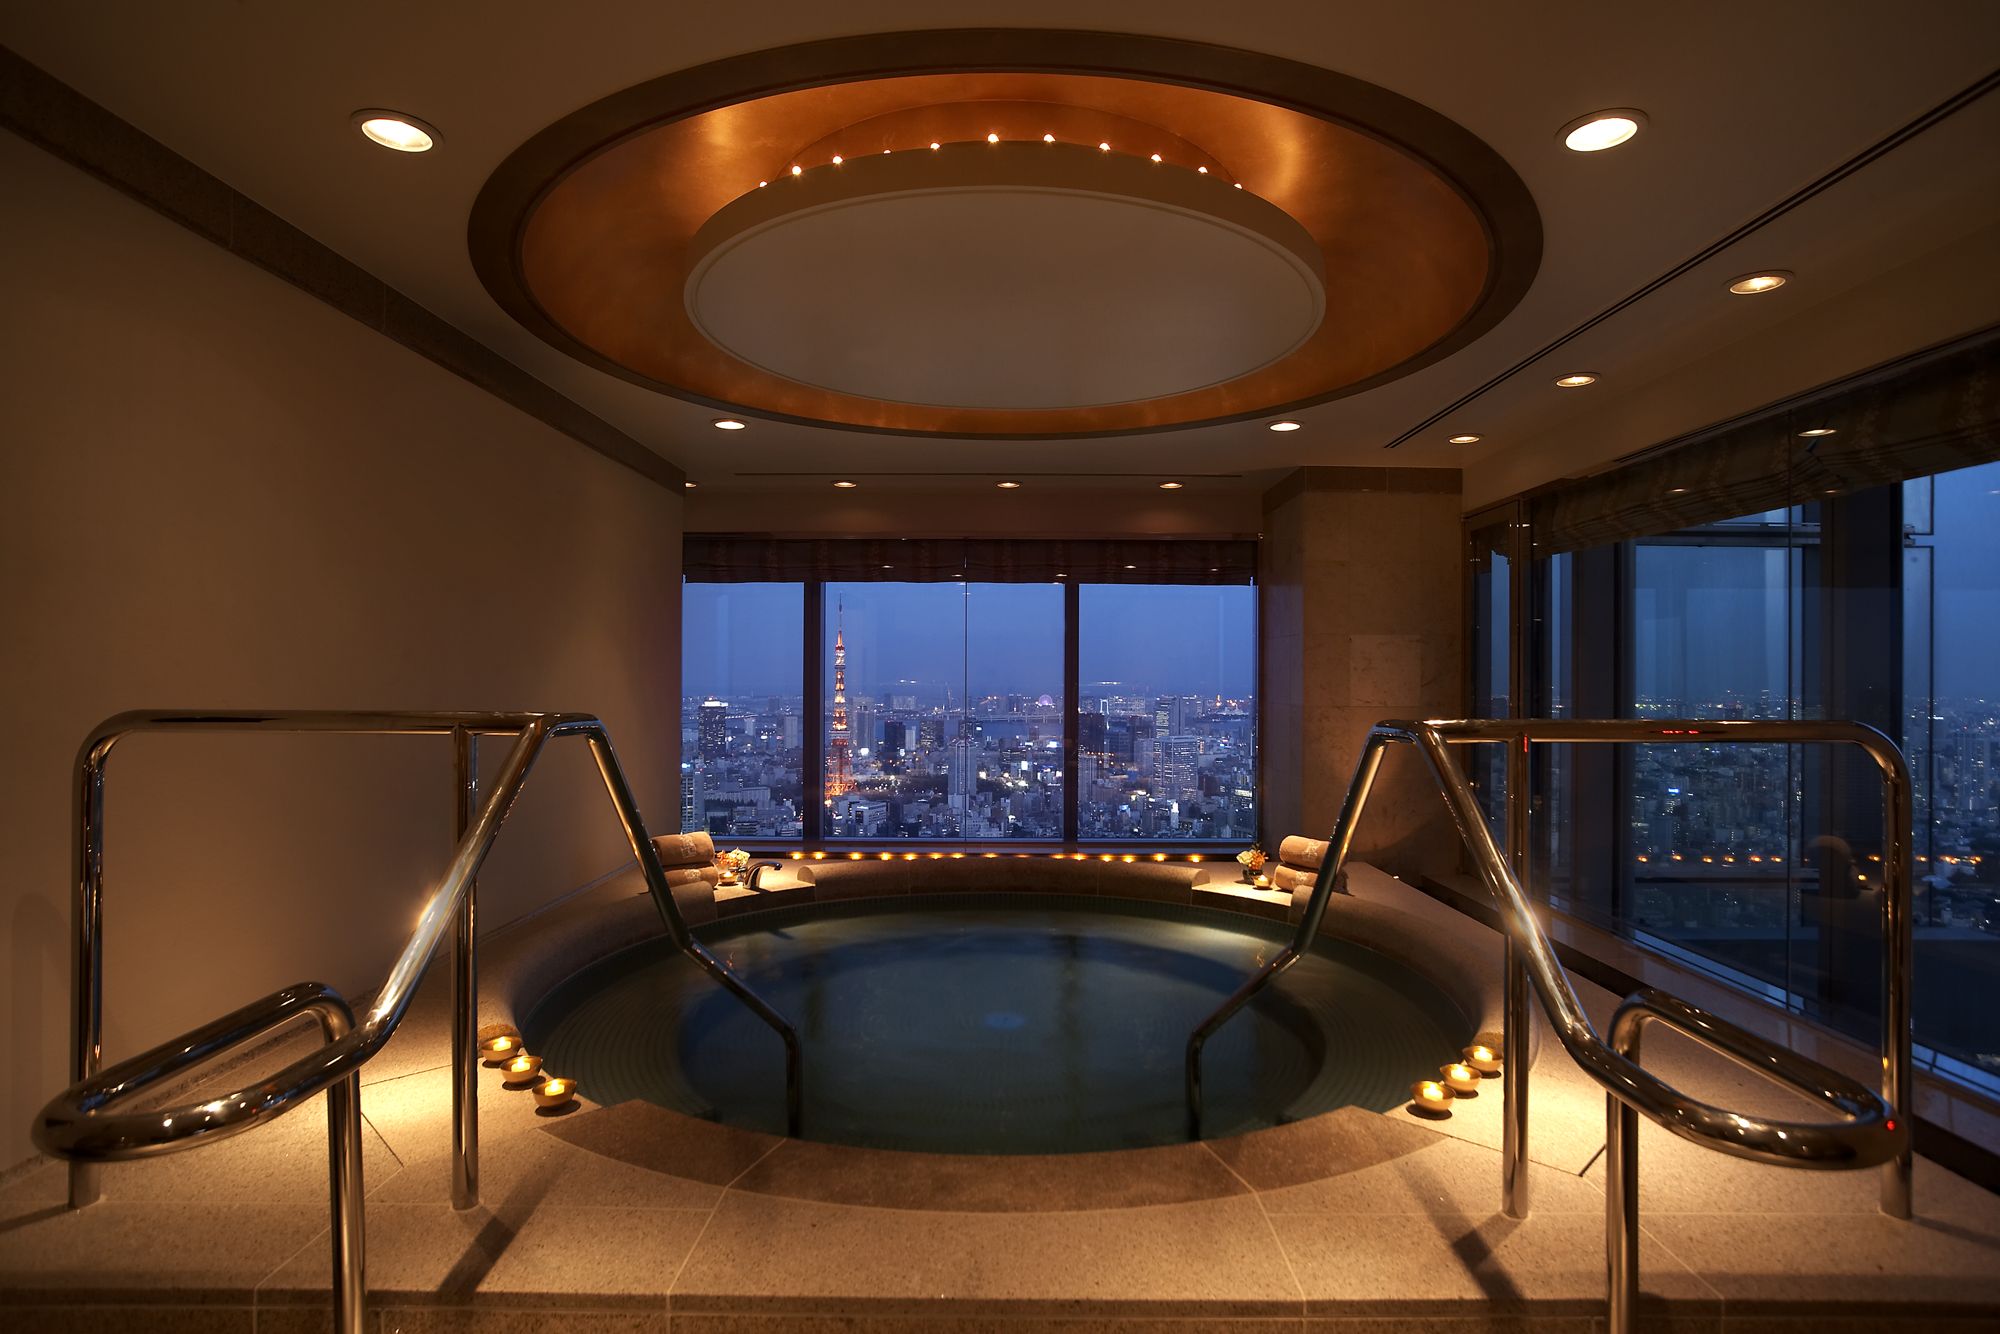 六本木ミッドタウンのザ・リッツ・カールトン東京46階にある高級ホテルスパ「ザ・リッツ・カールトン・スパ 東京」